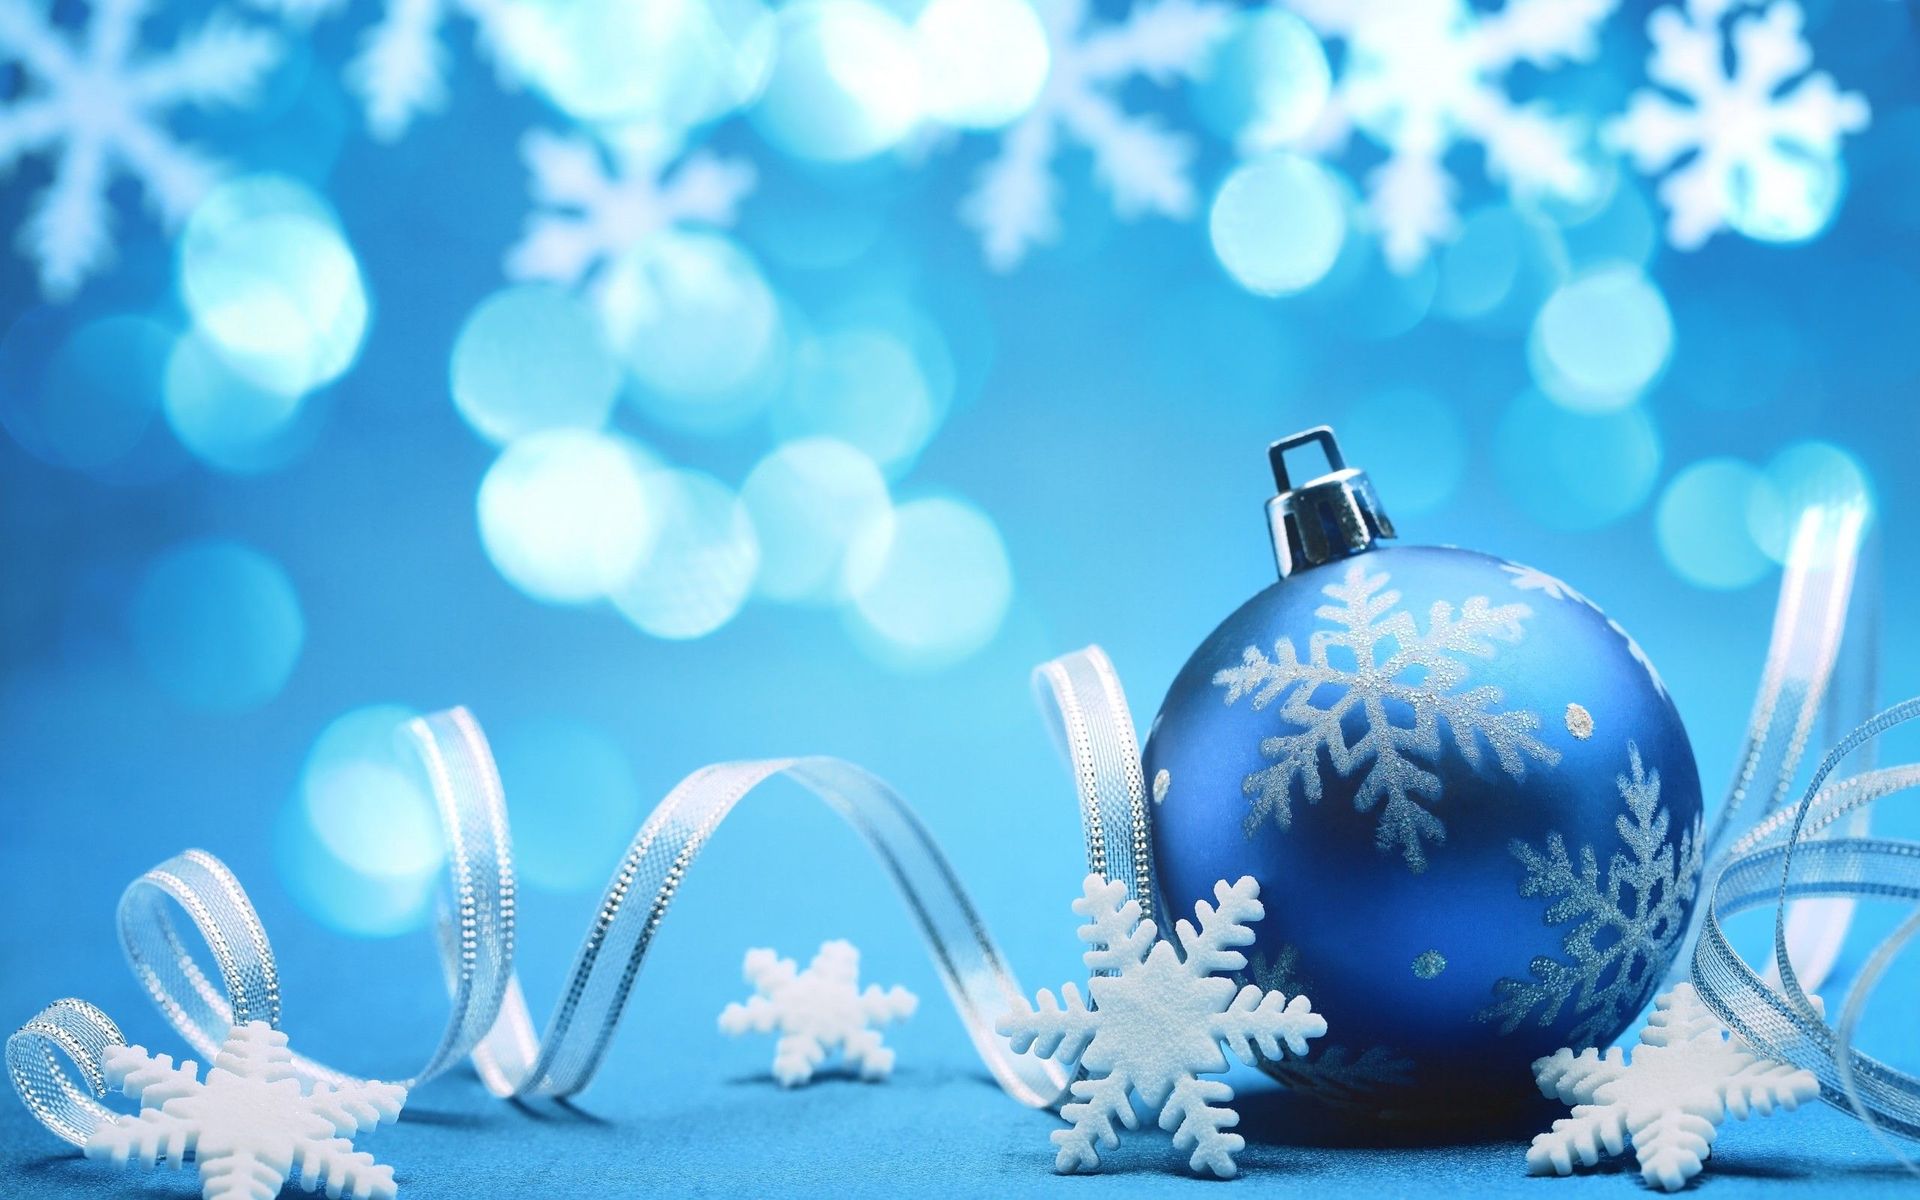 クリスマス壁紙hdワイド画像,青い,クリスマスオーナメント,空,クリスマスの飾り,スノーフレーク